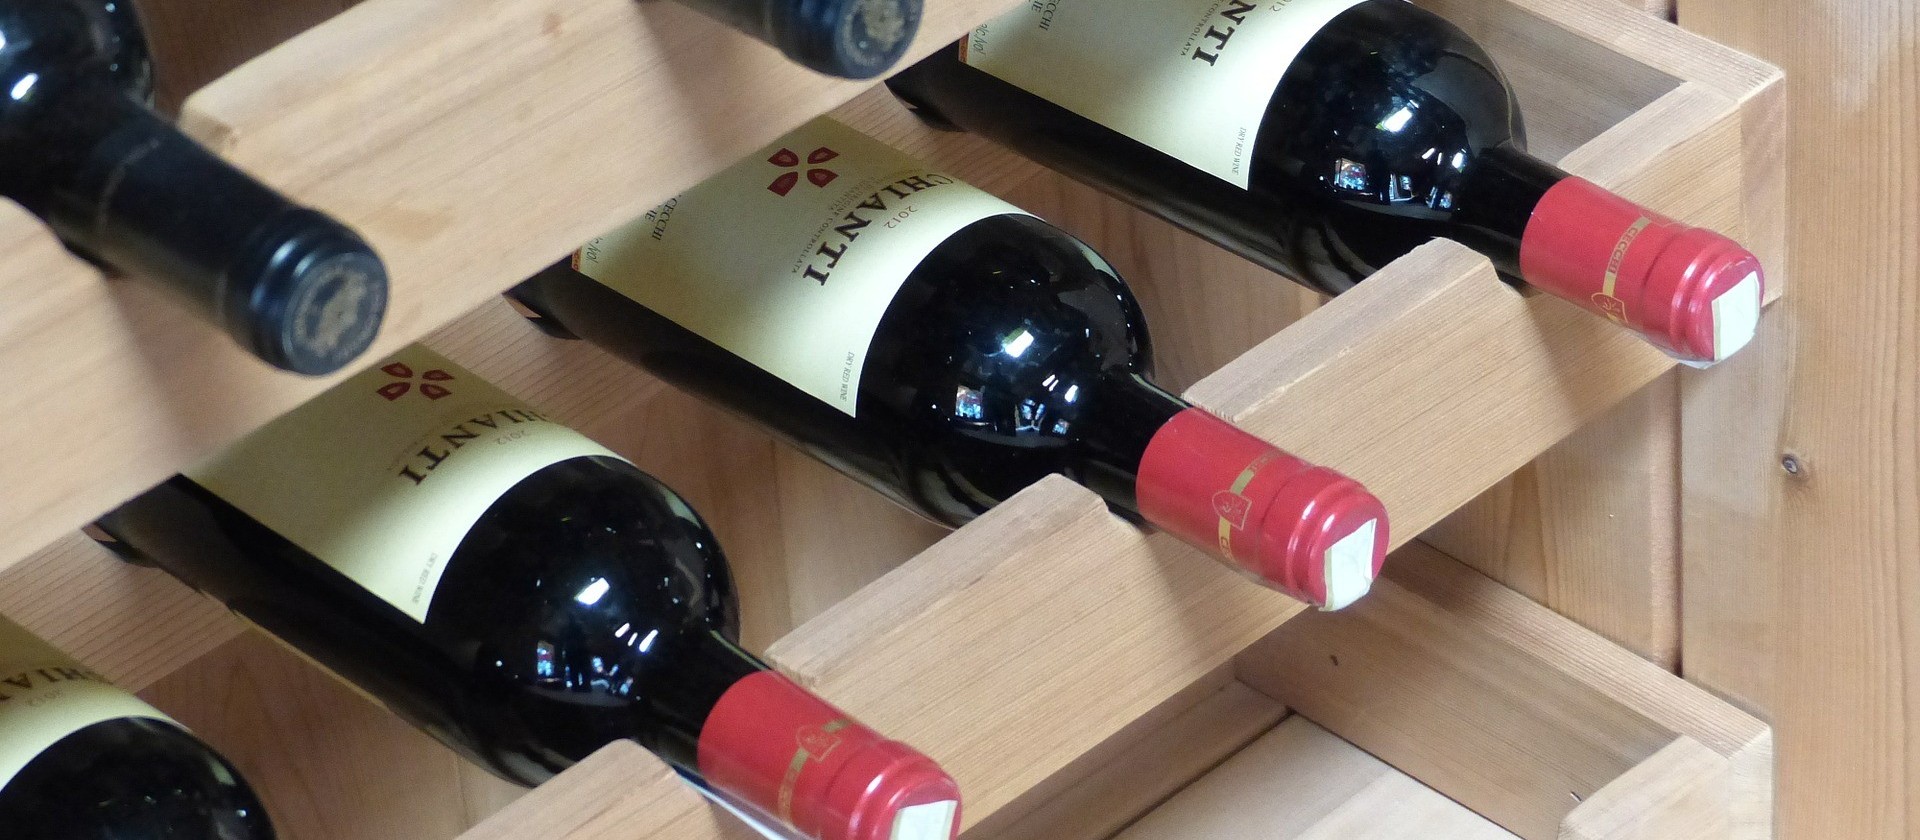 Chianti: O vinho mais antigo com região demarcada